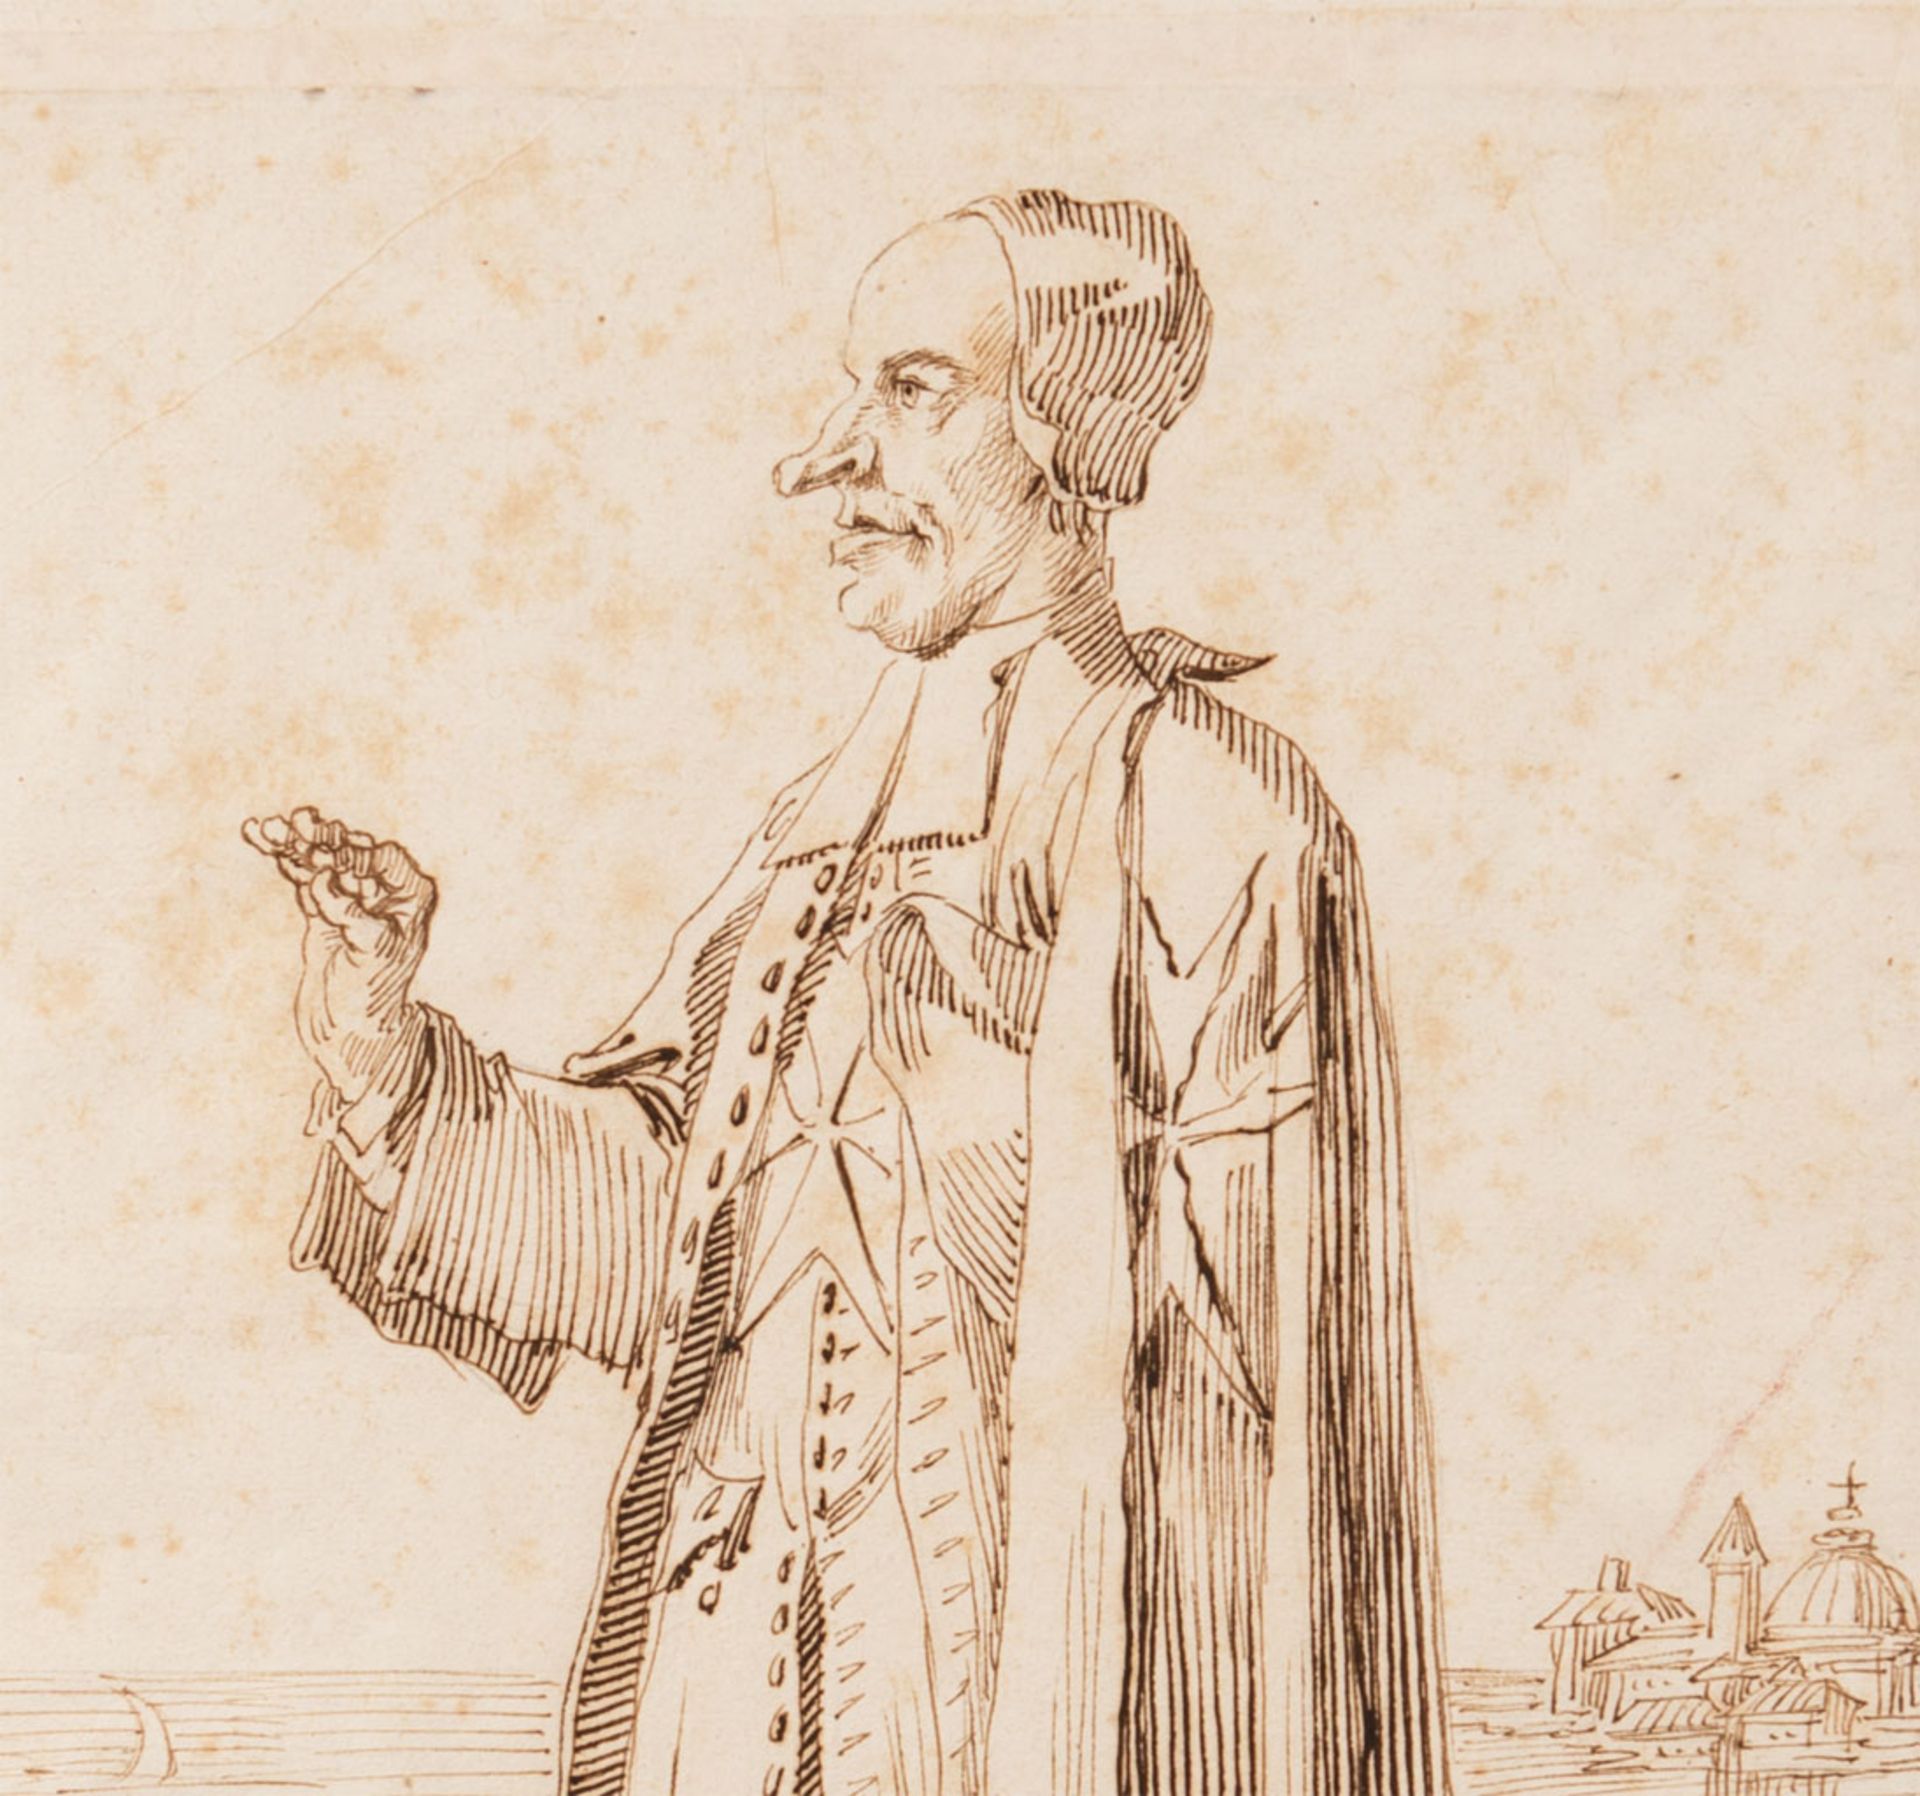 Pier Leone Ghezzi (1674-1755) - Image 2 of 2